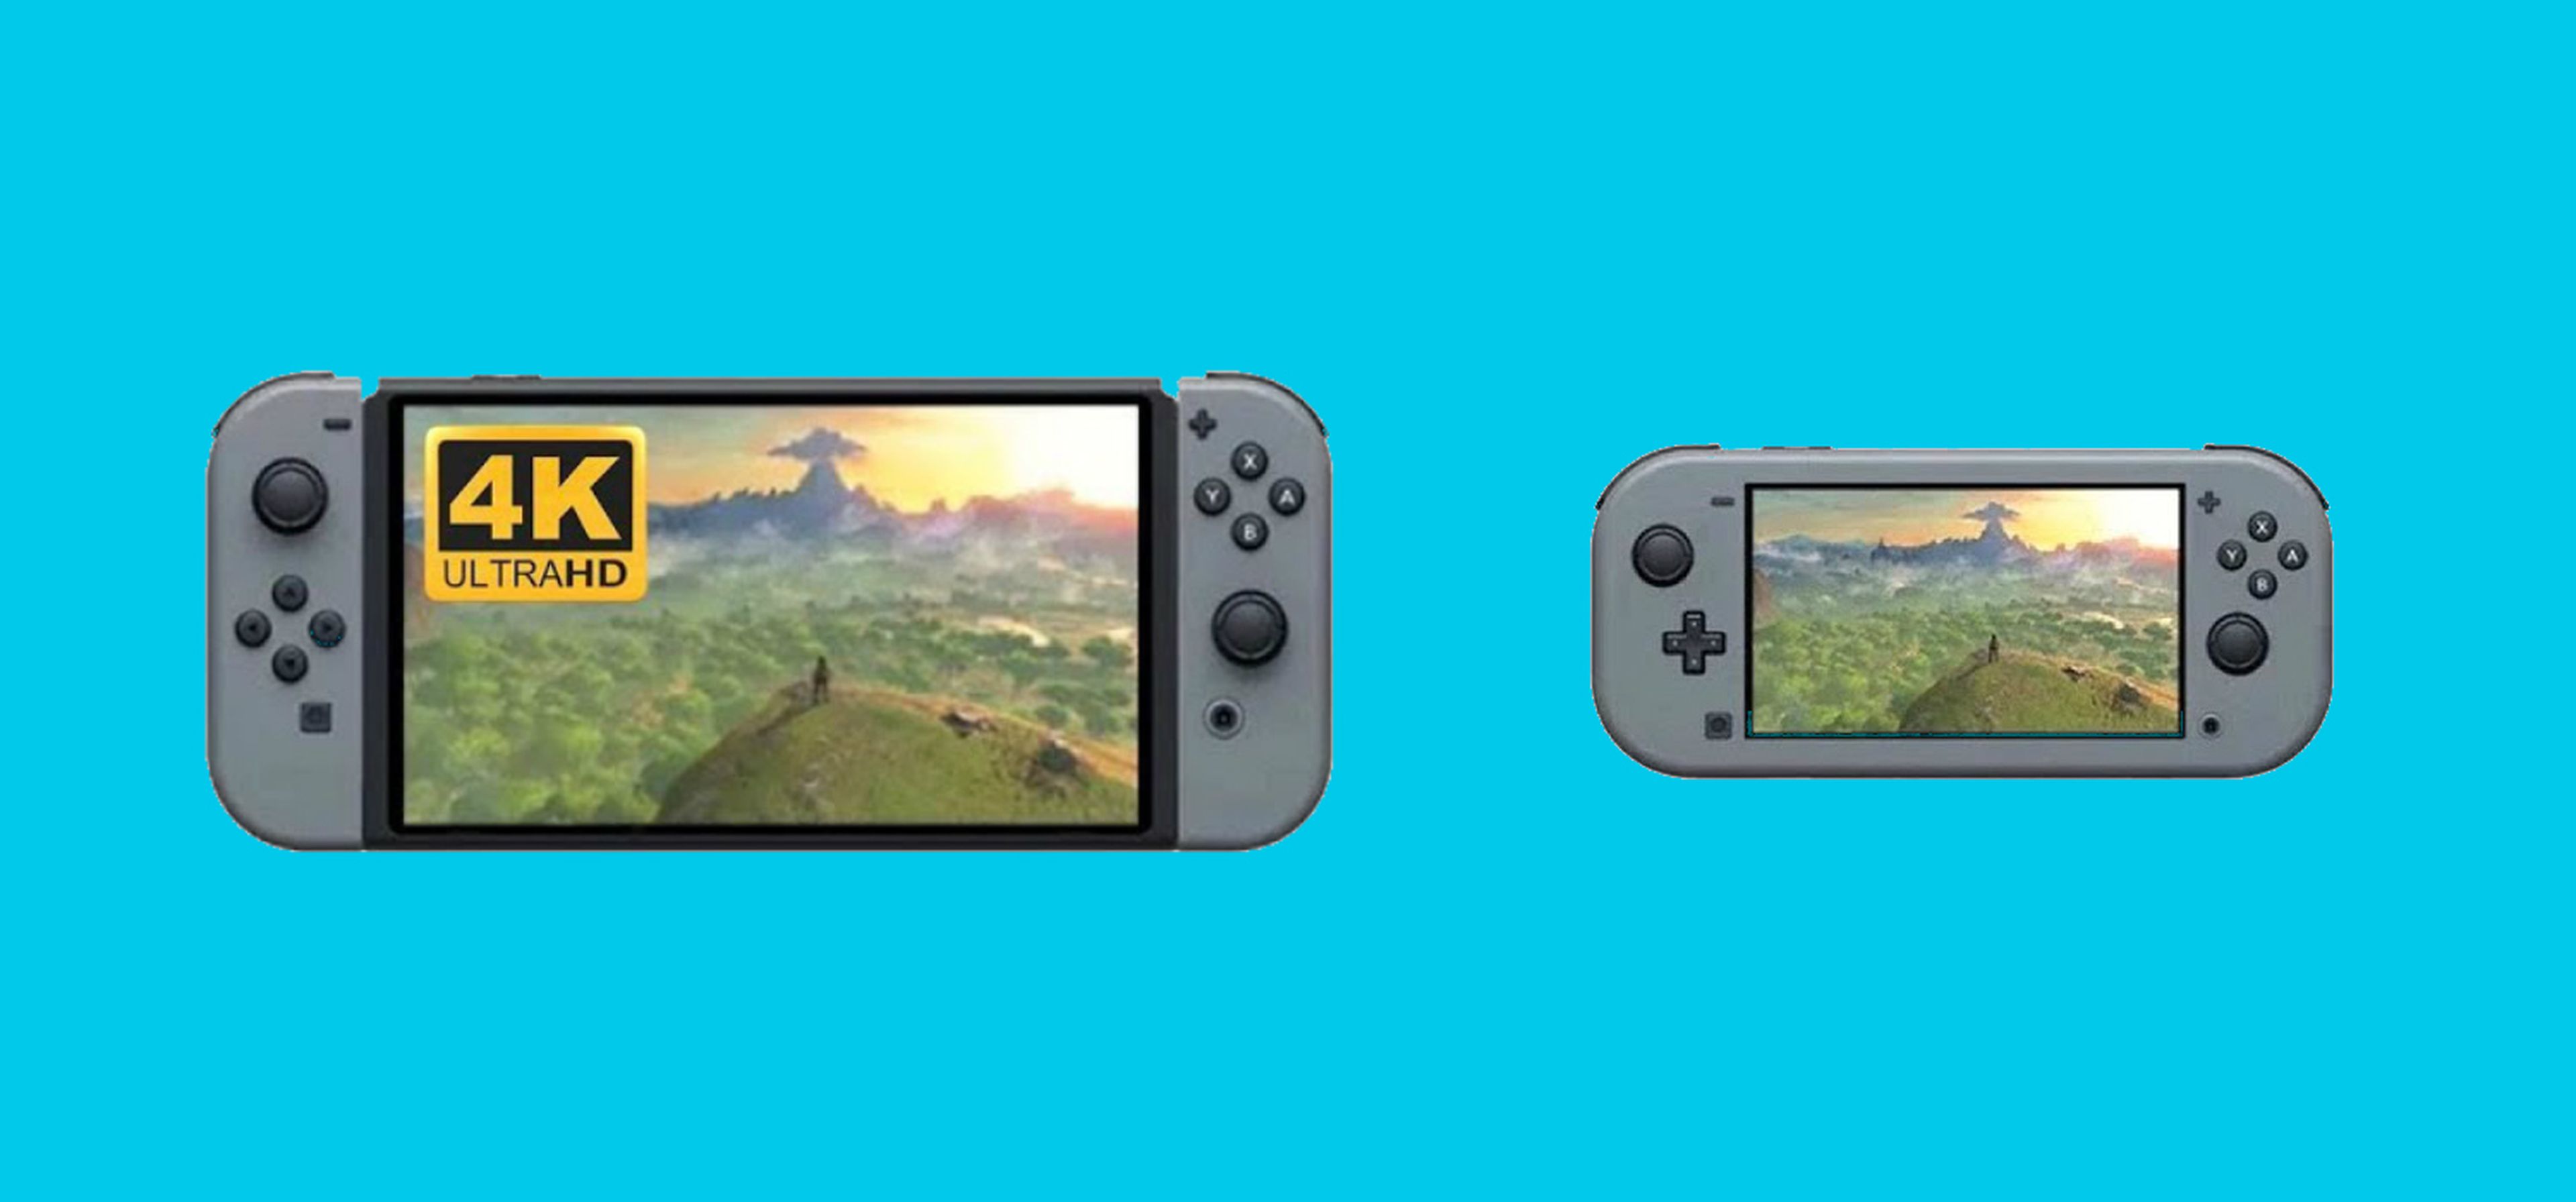 Nuevos modelos de Nintendo Switch